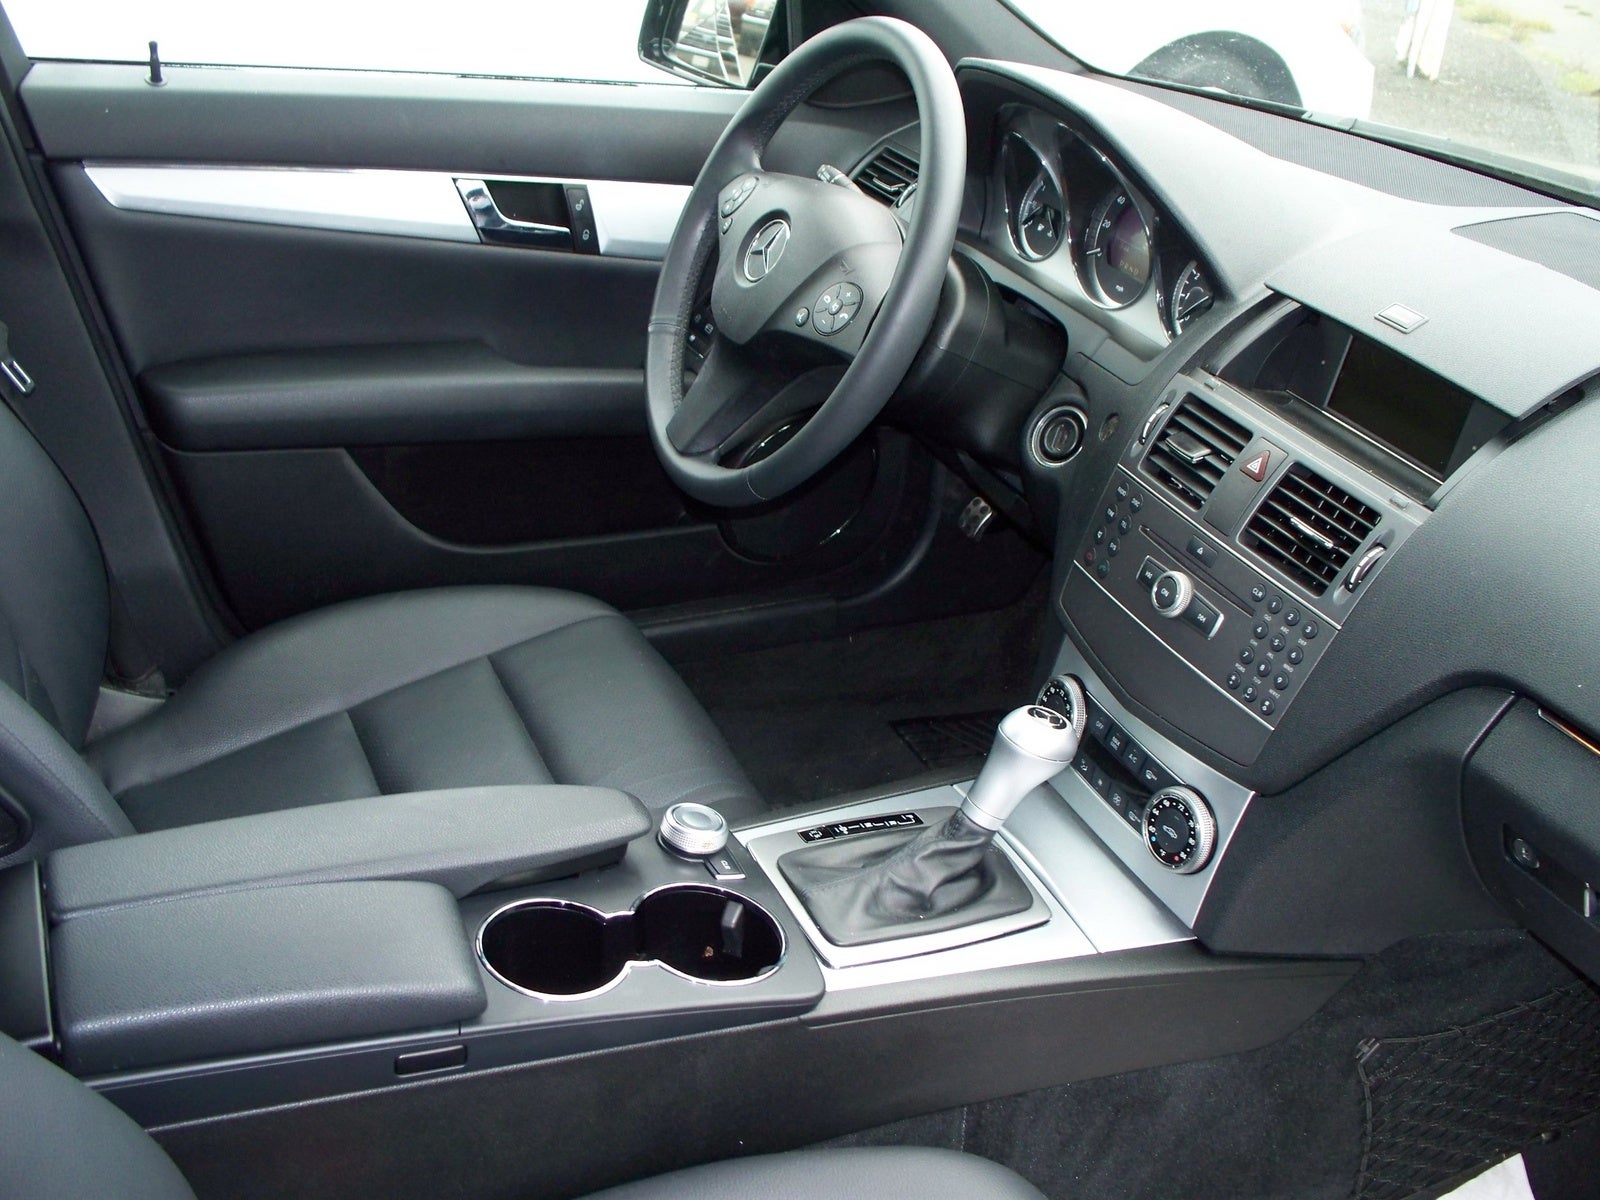 2011 Mercedes-Benz C-Class - Interior Pictures - CarGurus